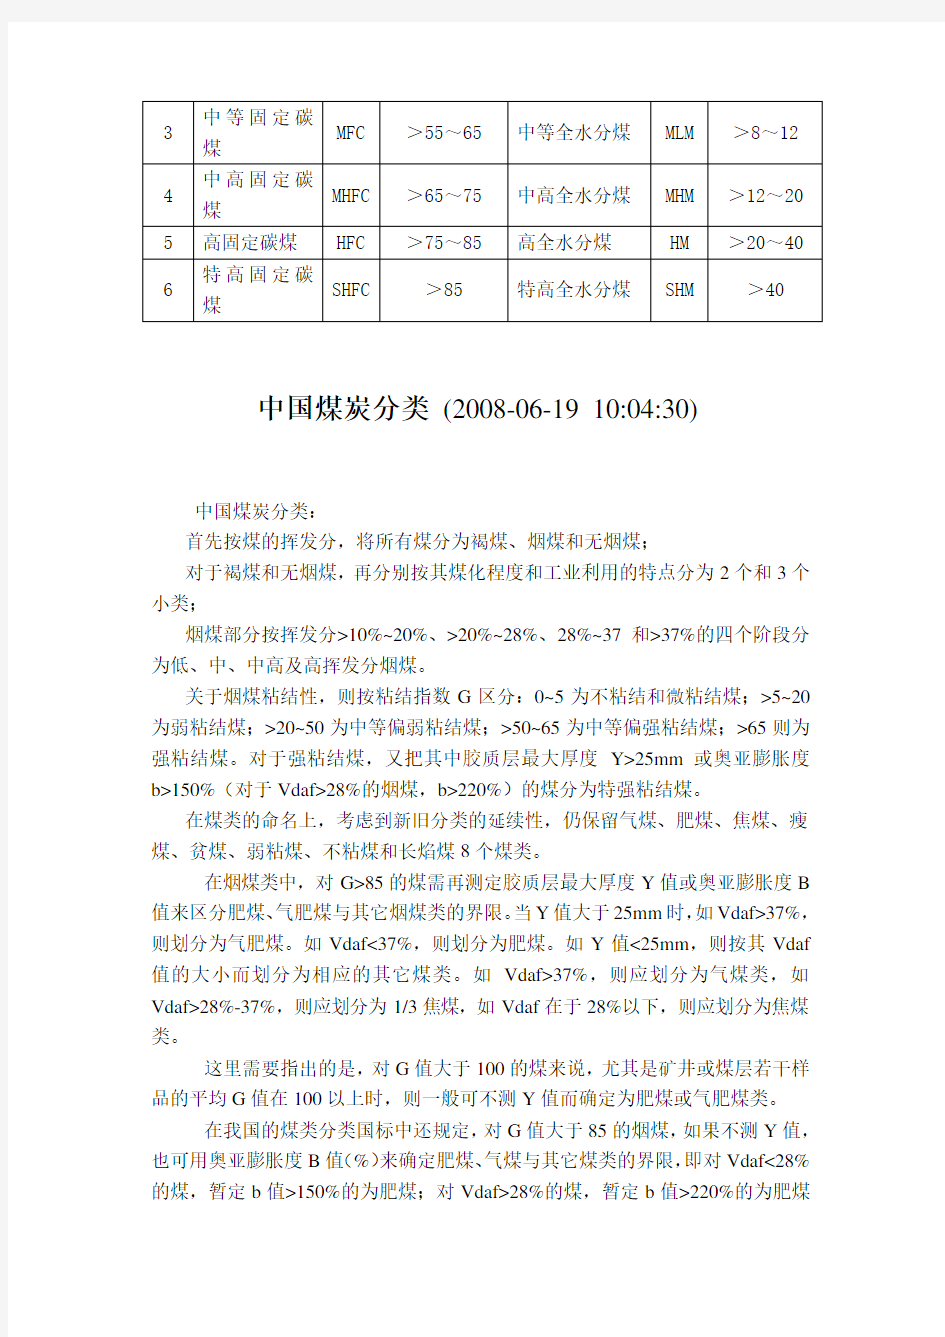 中国煤炭分类、煤质指标的分级